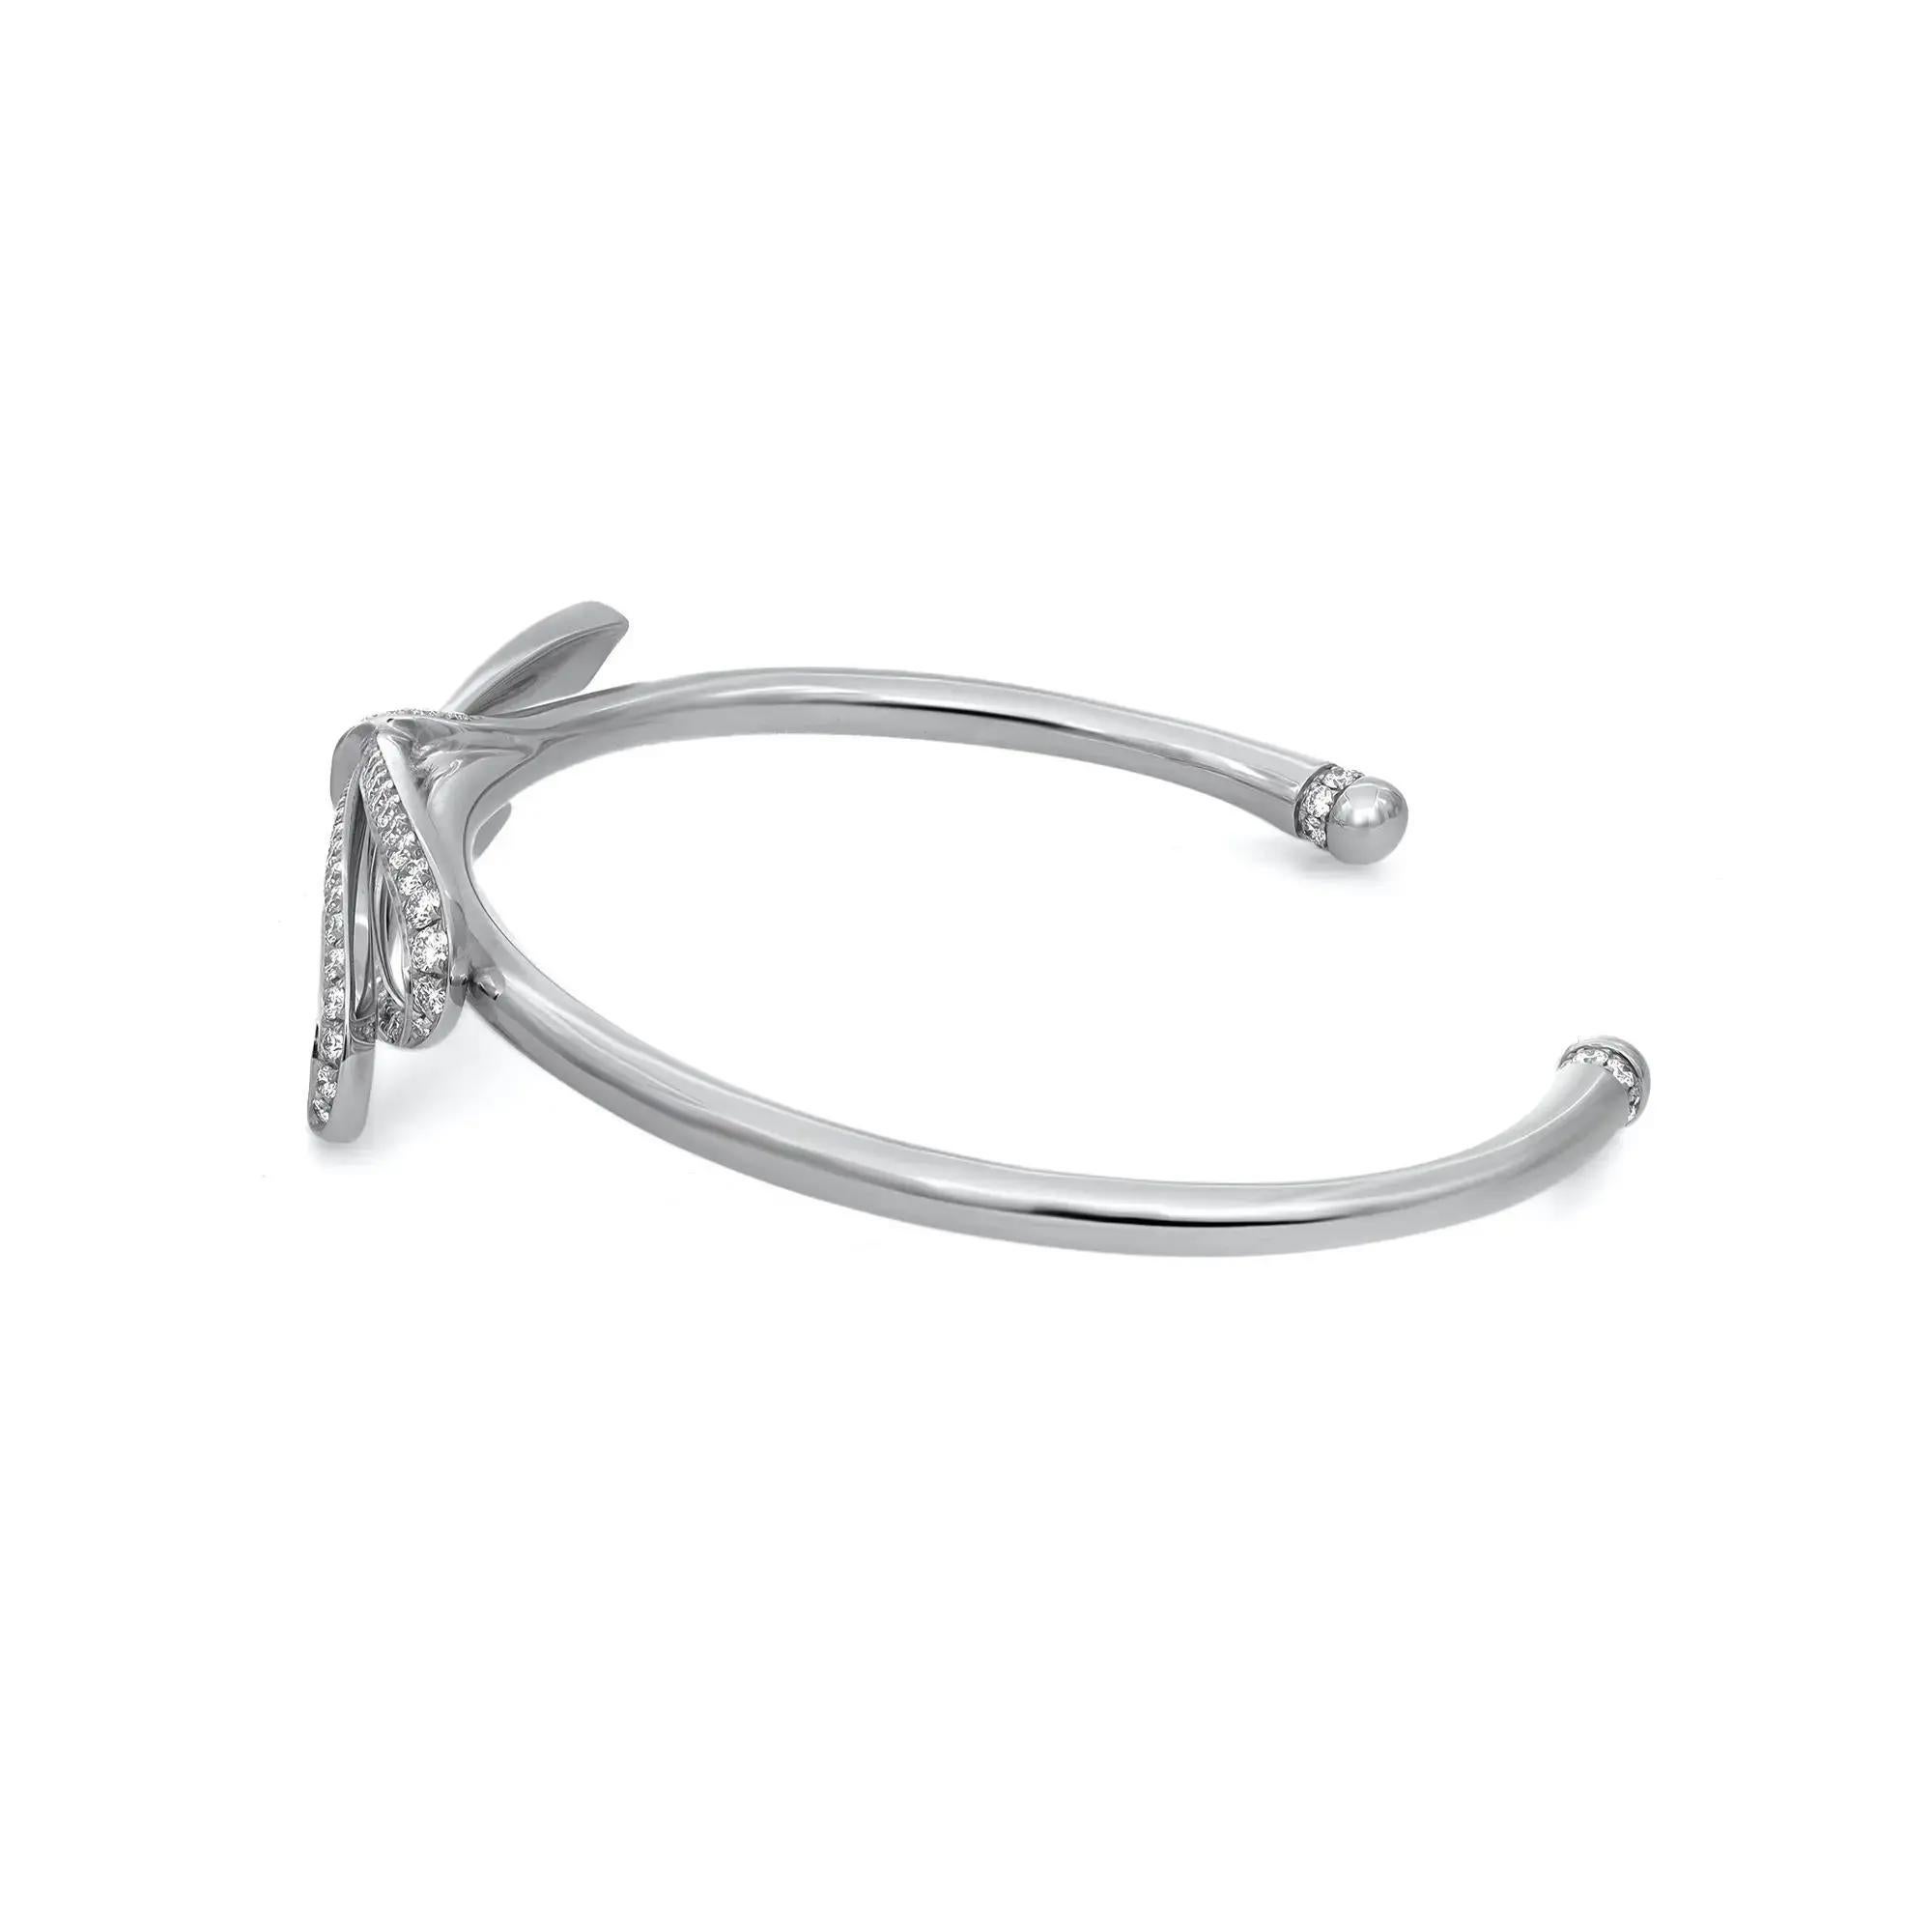 Cette magnifique pièce de Tiffiany & Co. Le bracelet manchette à gros nœud en diamant exsude la sophistication. Whiting en or blanc lustré 18K. Il s'agit d'un bracelet manchette avec un grand nœud au centre, serti de diamants ronds de taille